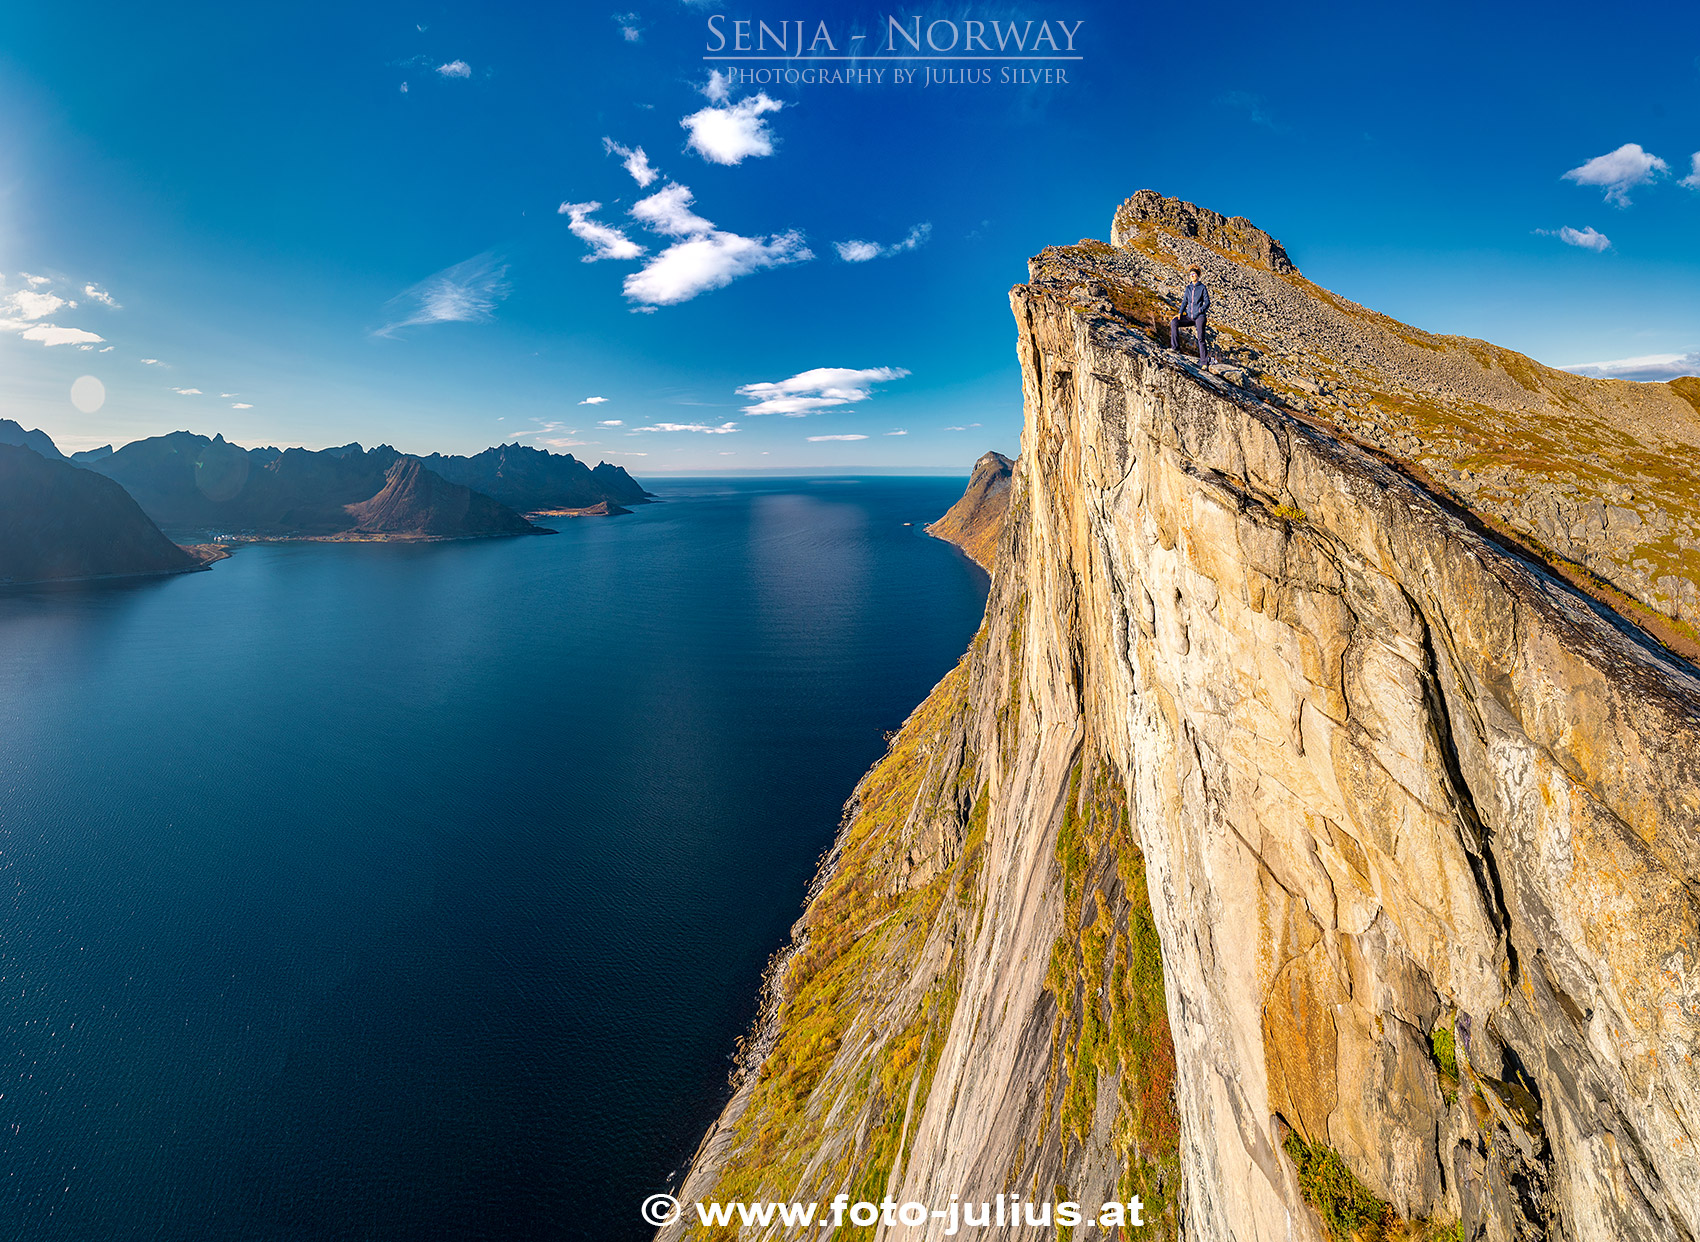 133a_Island_Senja_Norway.jpg, 881kB